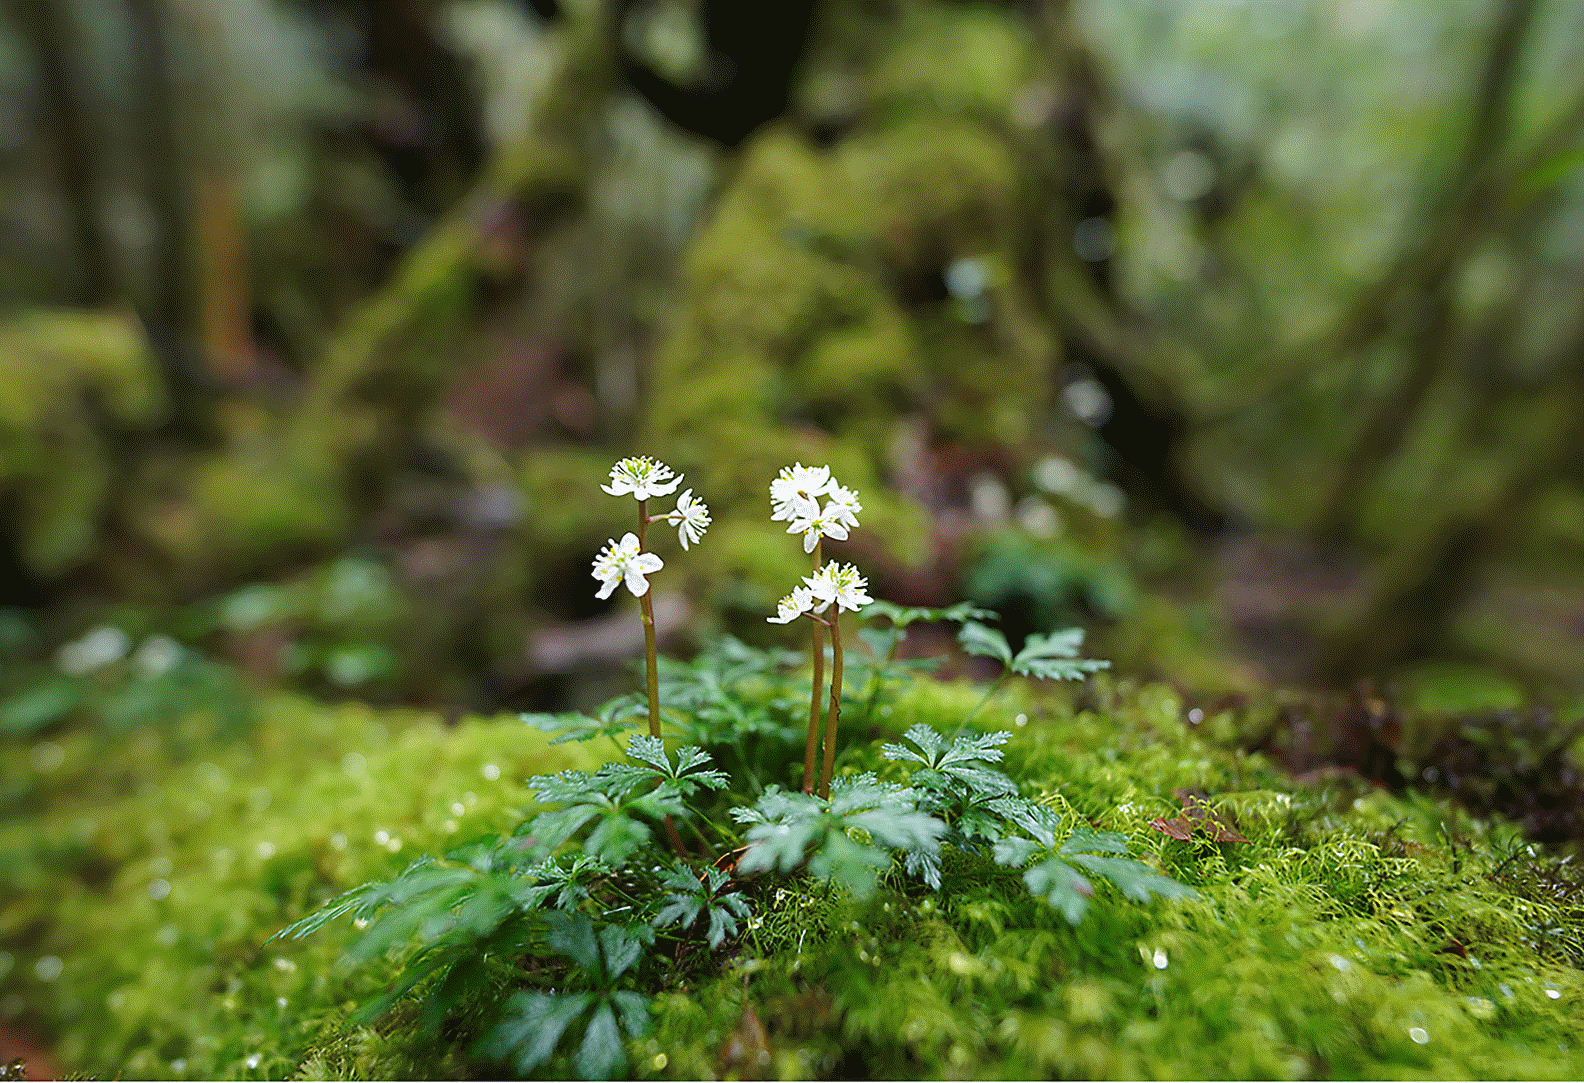 Slika izostrene rože na skali v gozdu z zamegljenim ospredjem in ozadjem